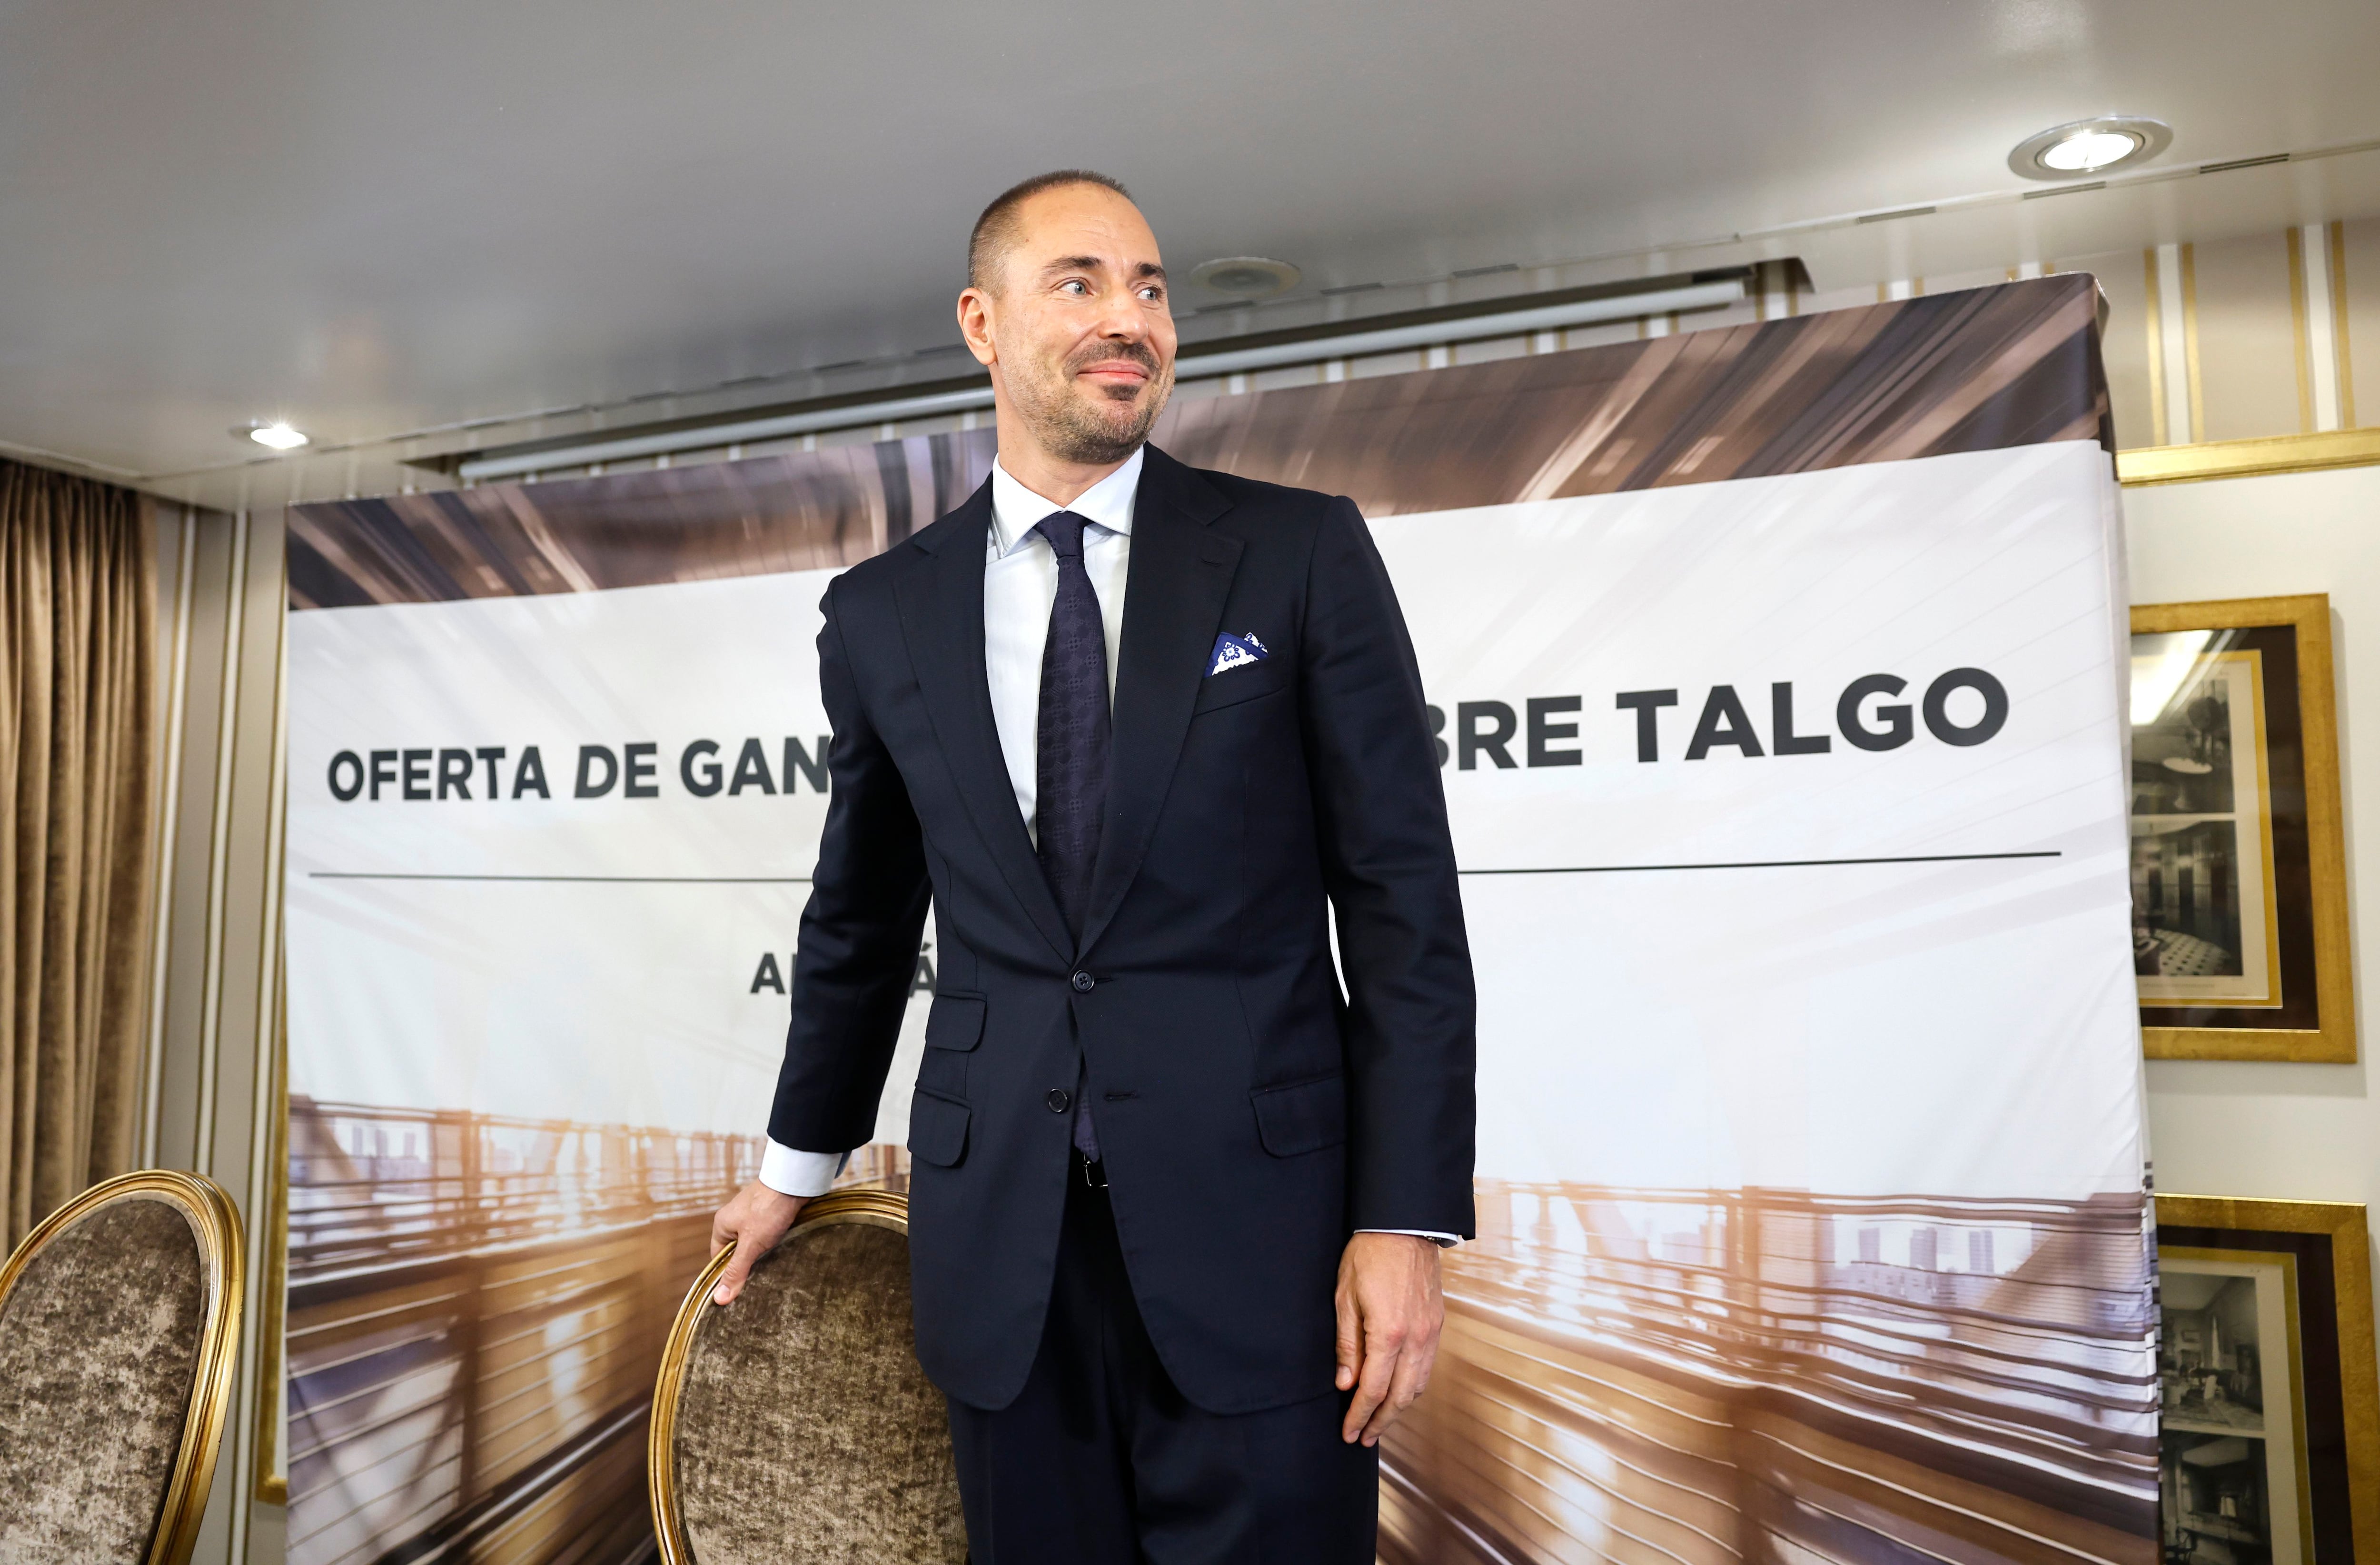 András Tombor (Ganz Mavag): “Estamos abiertos a propuestas del Gobierno y del empresariado español para agilizar la opa de Talgo”